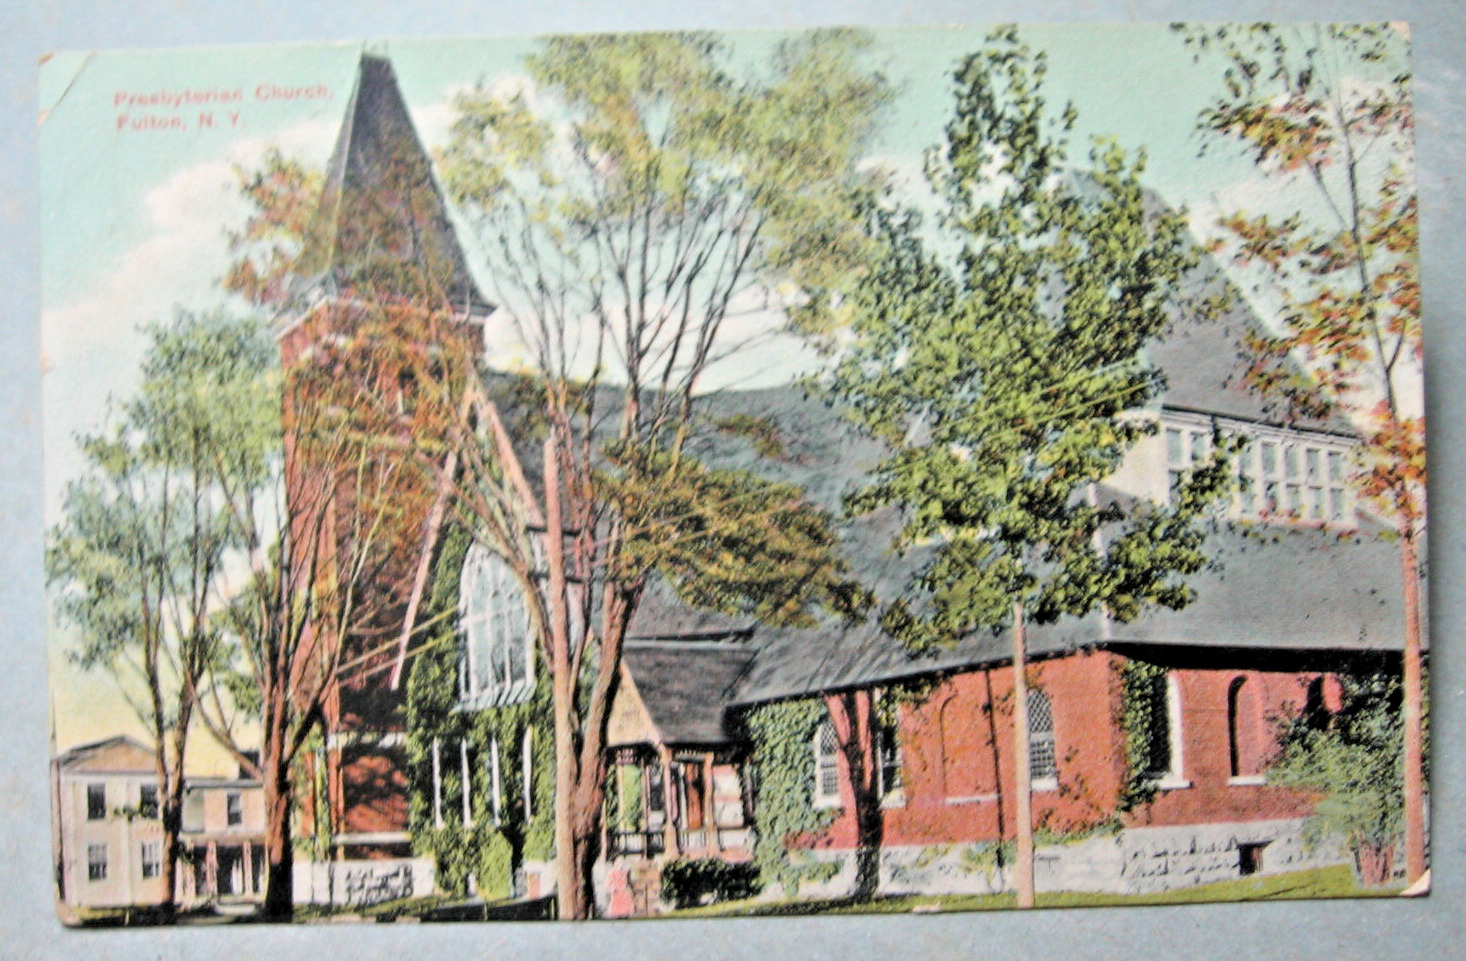 1911 Presbyterian Church, Fulton, N.Y. Postcard